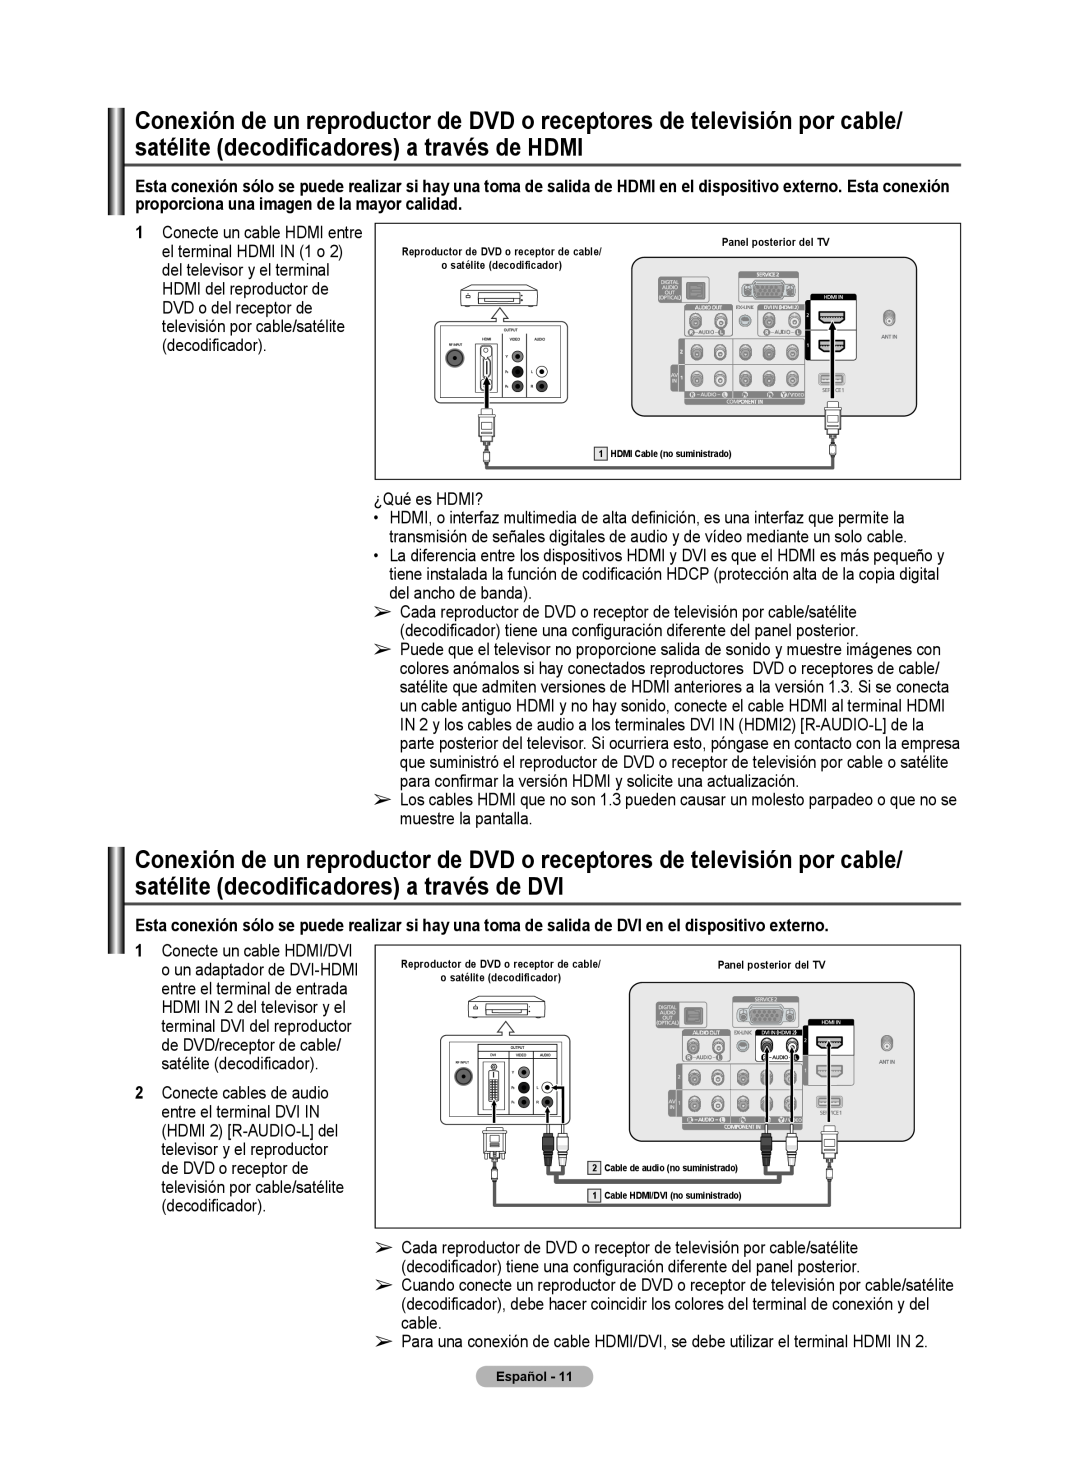 Samsung 510 user manual Reproductor de DVD o receptor de cable o satélite decodificador, Panel posterior del TV, N 2 y 